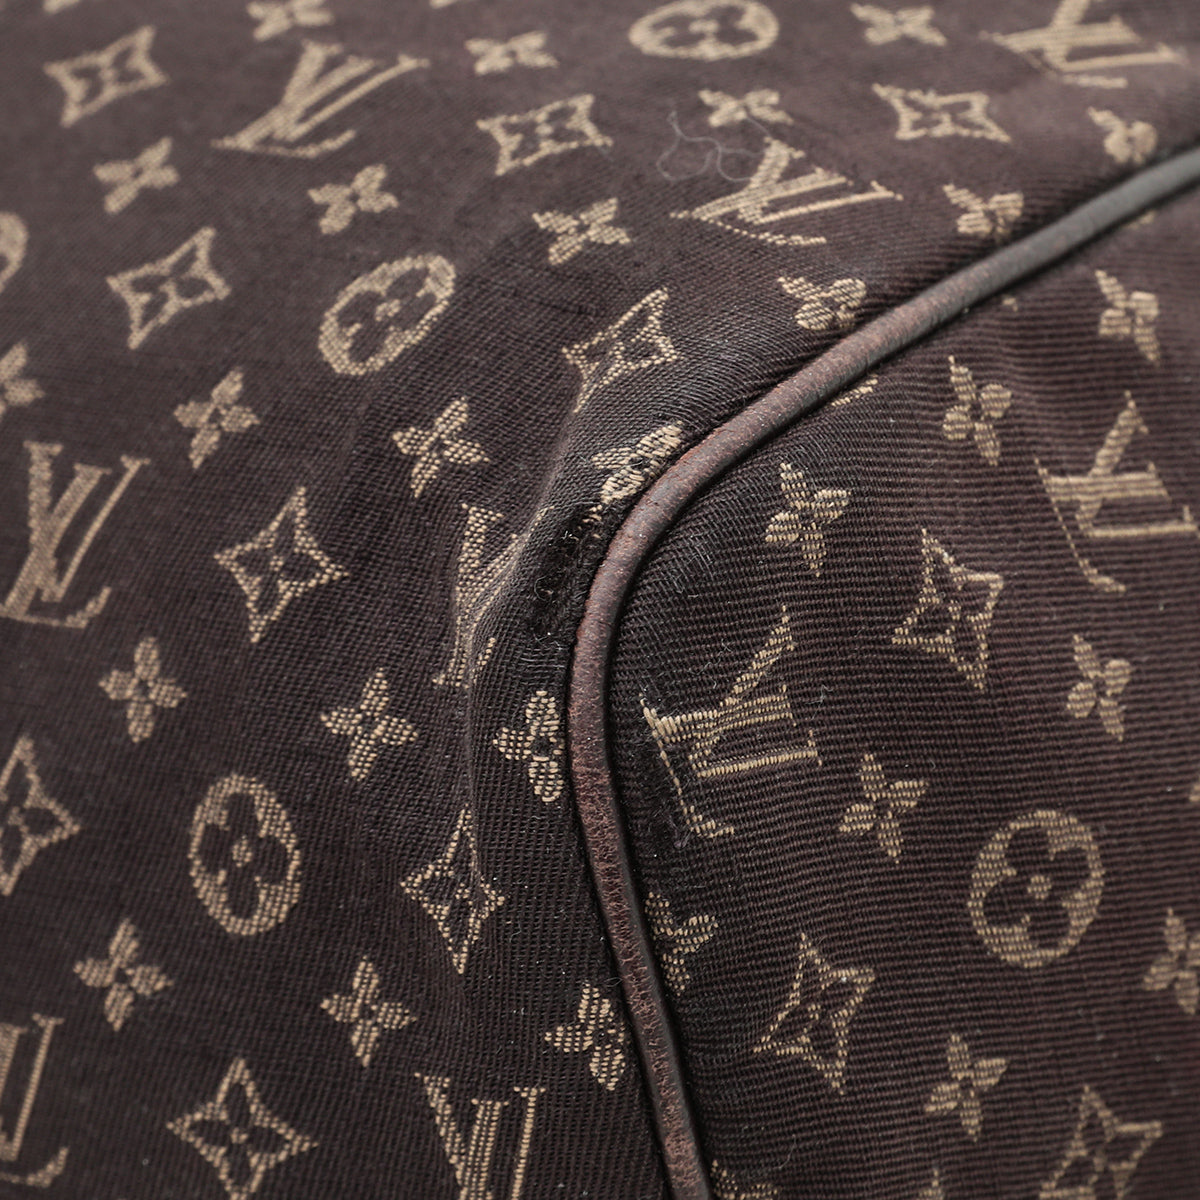 Louis Vuitton Brown Speedy Mini Lin Bag